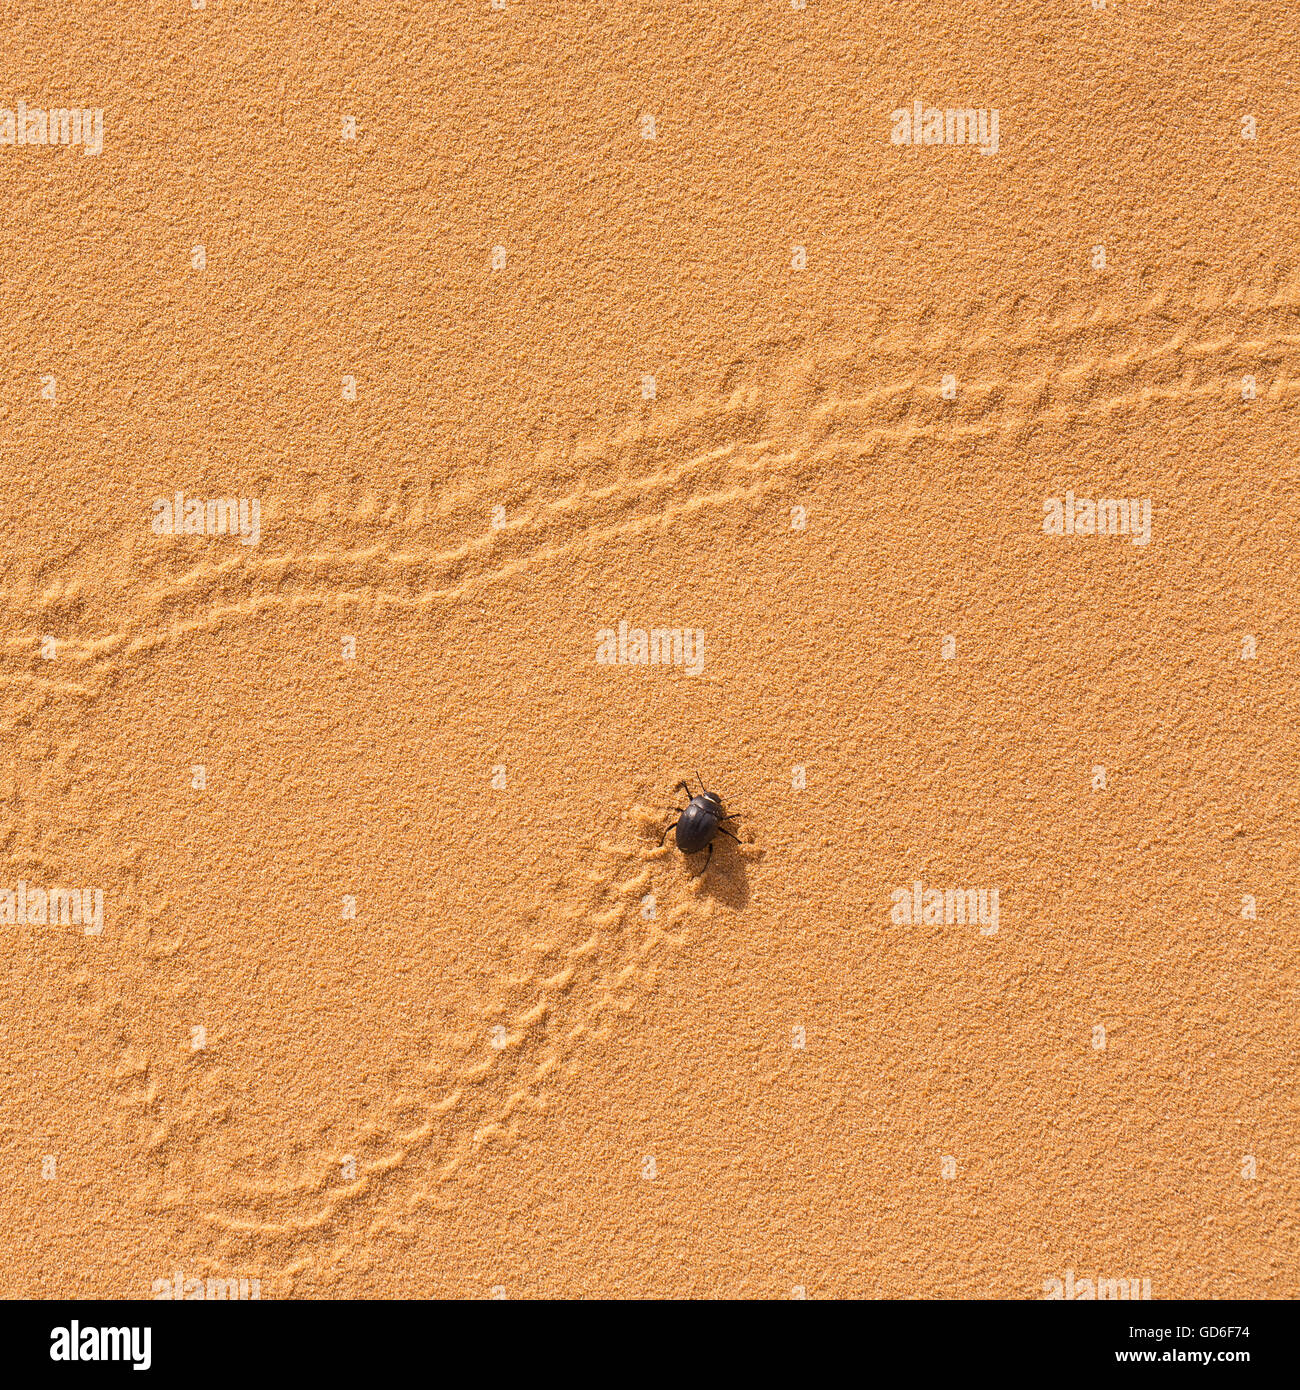 Erodius gibbus (Darkling beetle) laisse des traces sur une dune de sable photographiés en Israël en mars Banque D'Images